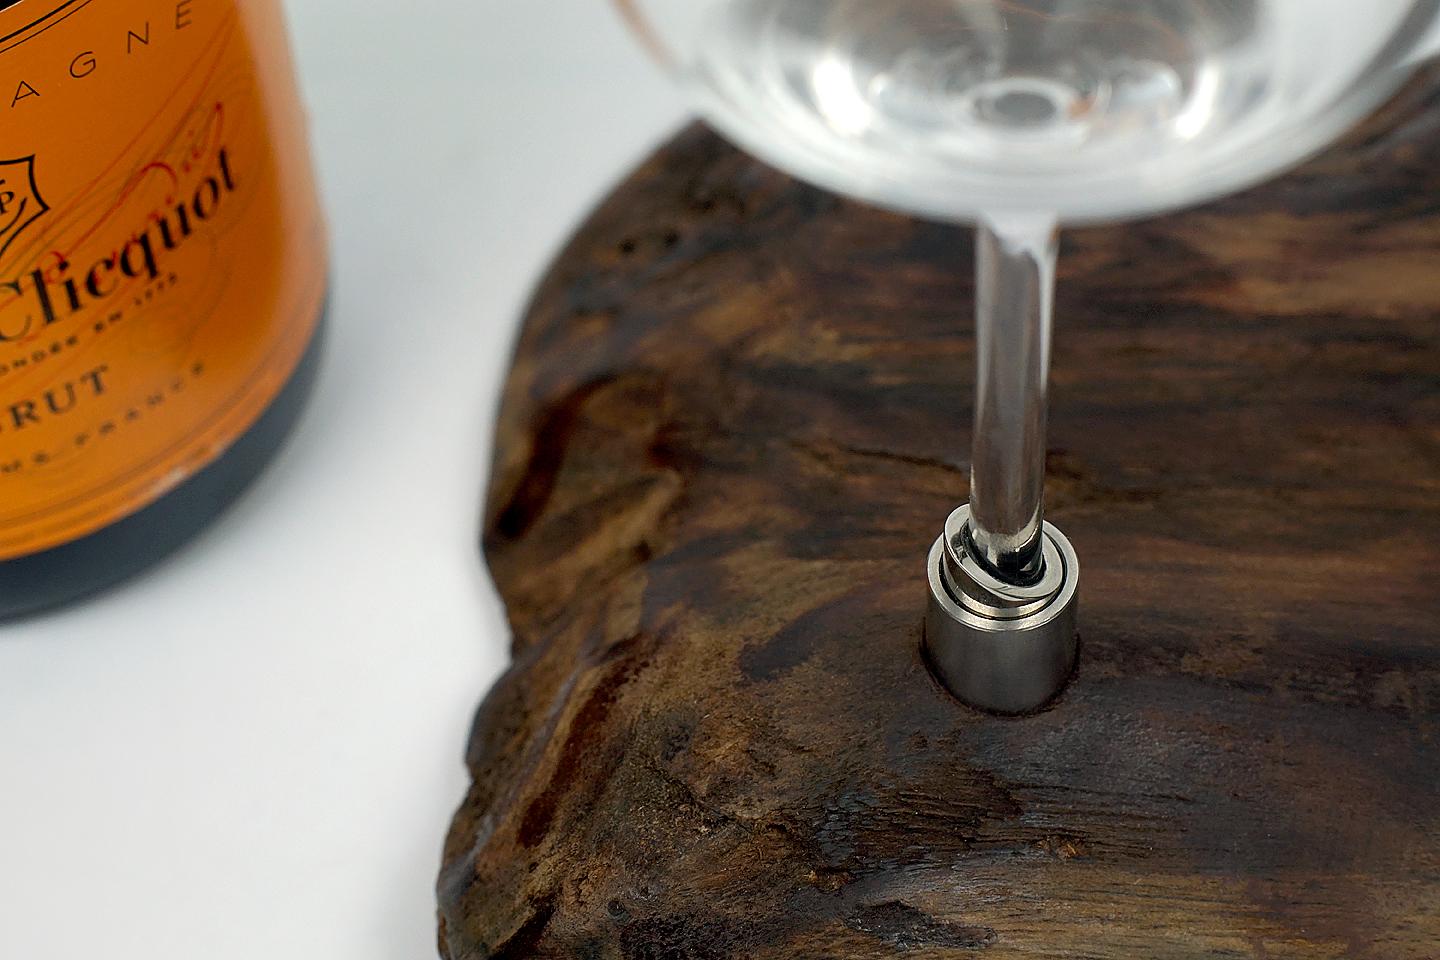 Hochwertige Gläser auf Sonokiling-Holz mit Swarovski-Kristallen verziert.

Schöner organischer Holzteller aus Sonokiling mit 2 weißen Weingläsern und atemberaubenden Swarovski Kristalldetails.